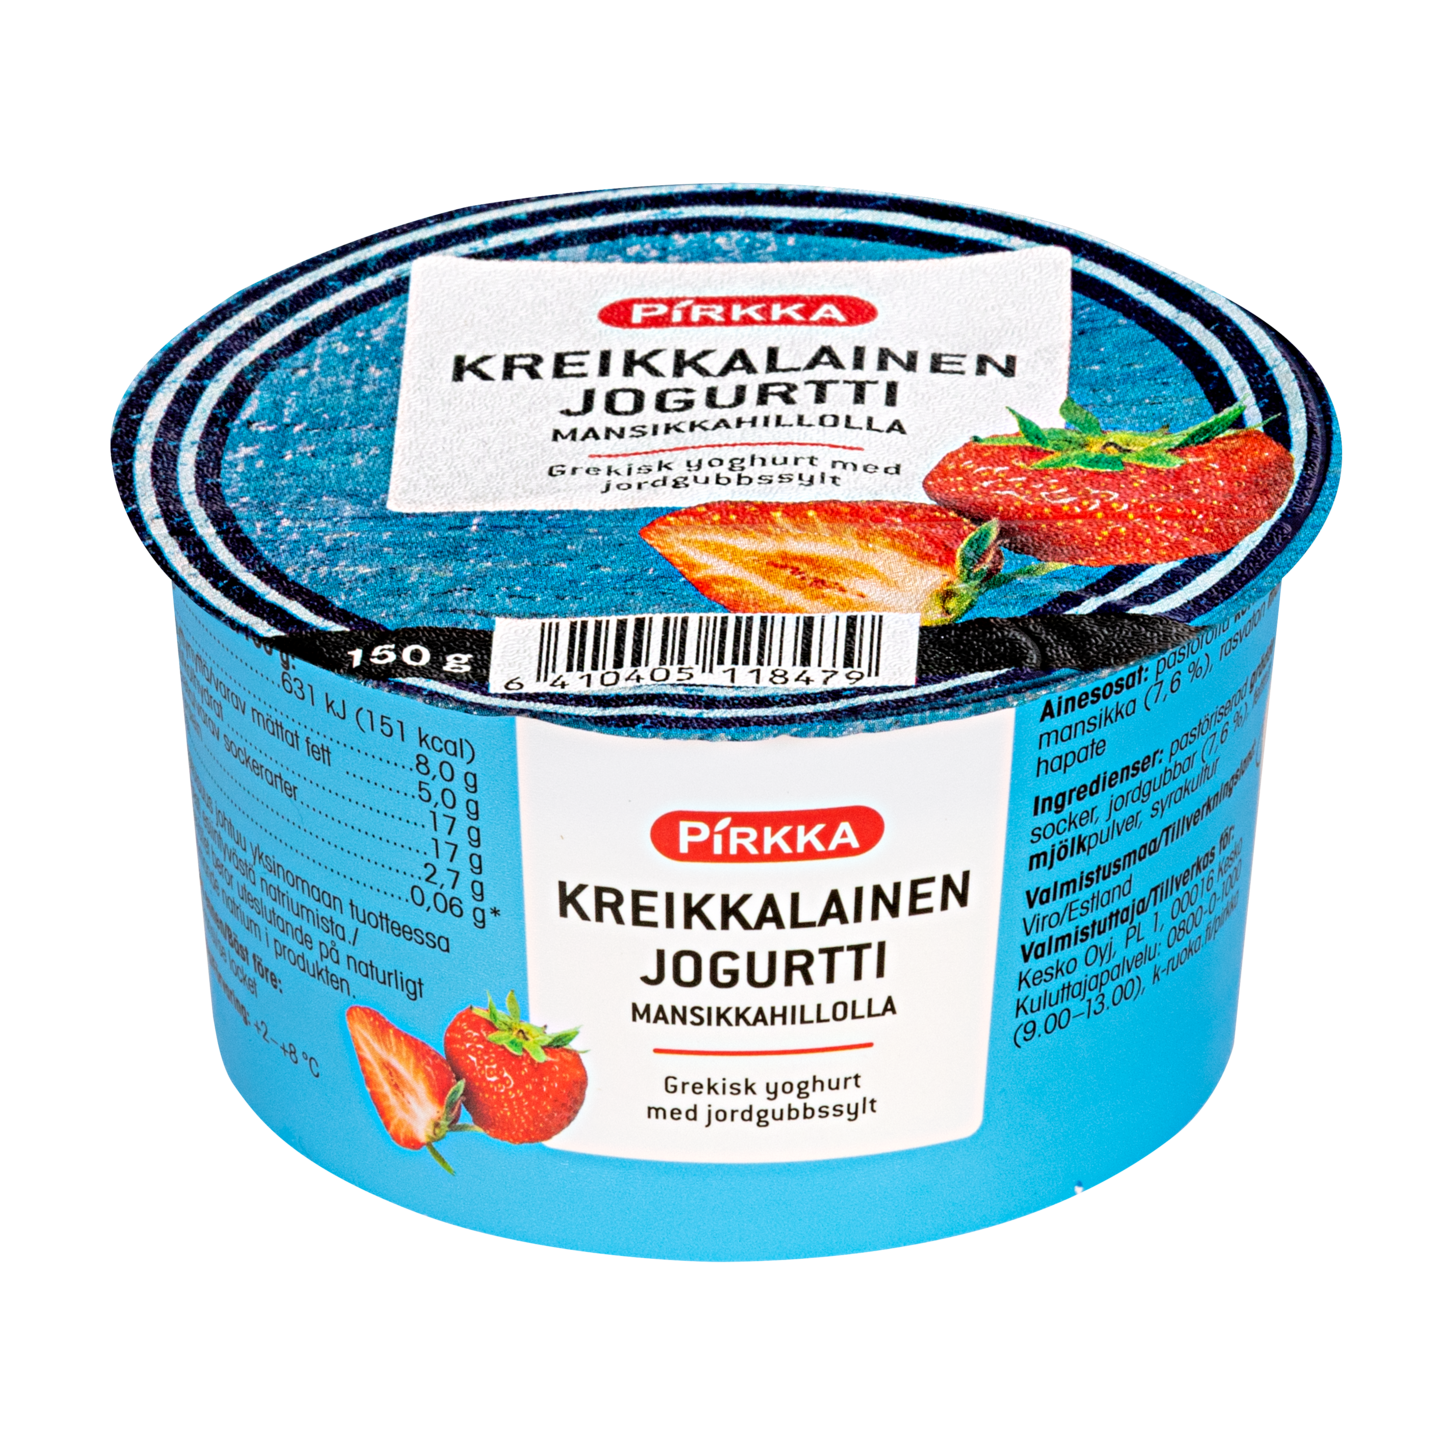 Pirkka kreikkalainen jogurtti mansikkahillolla 150g | K-Ruoka Verkkokauppa